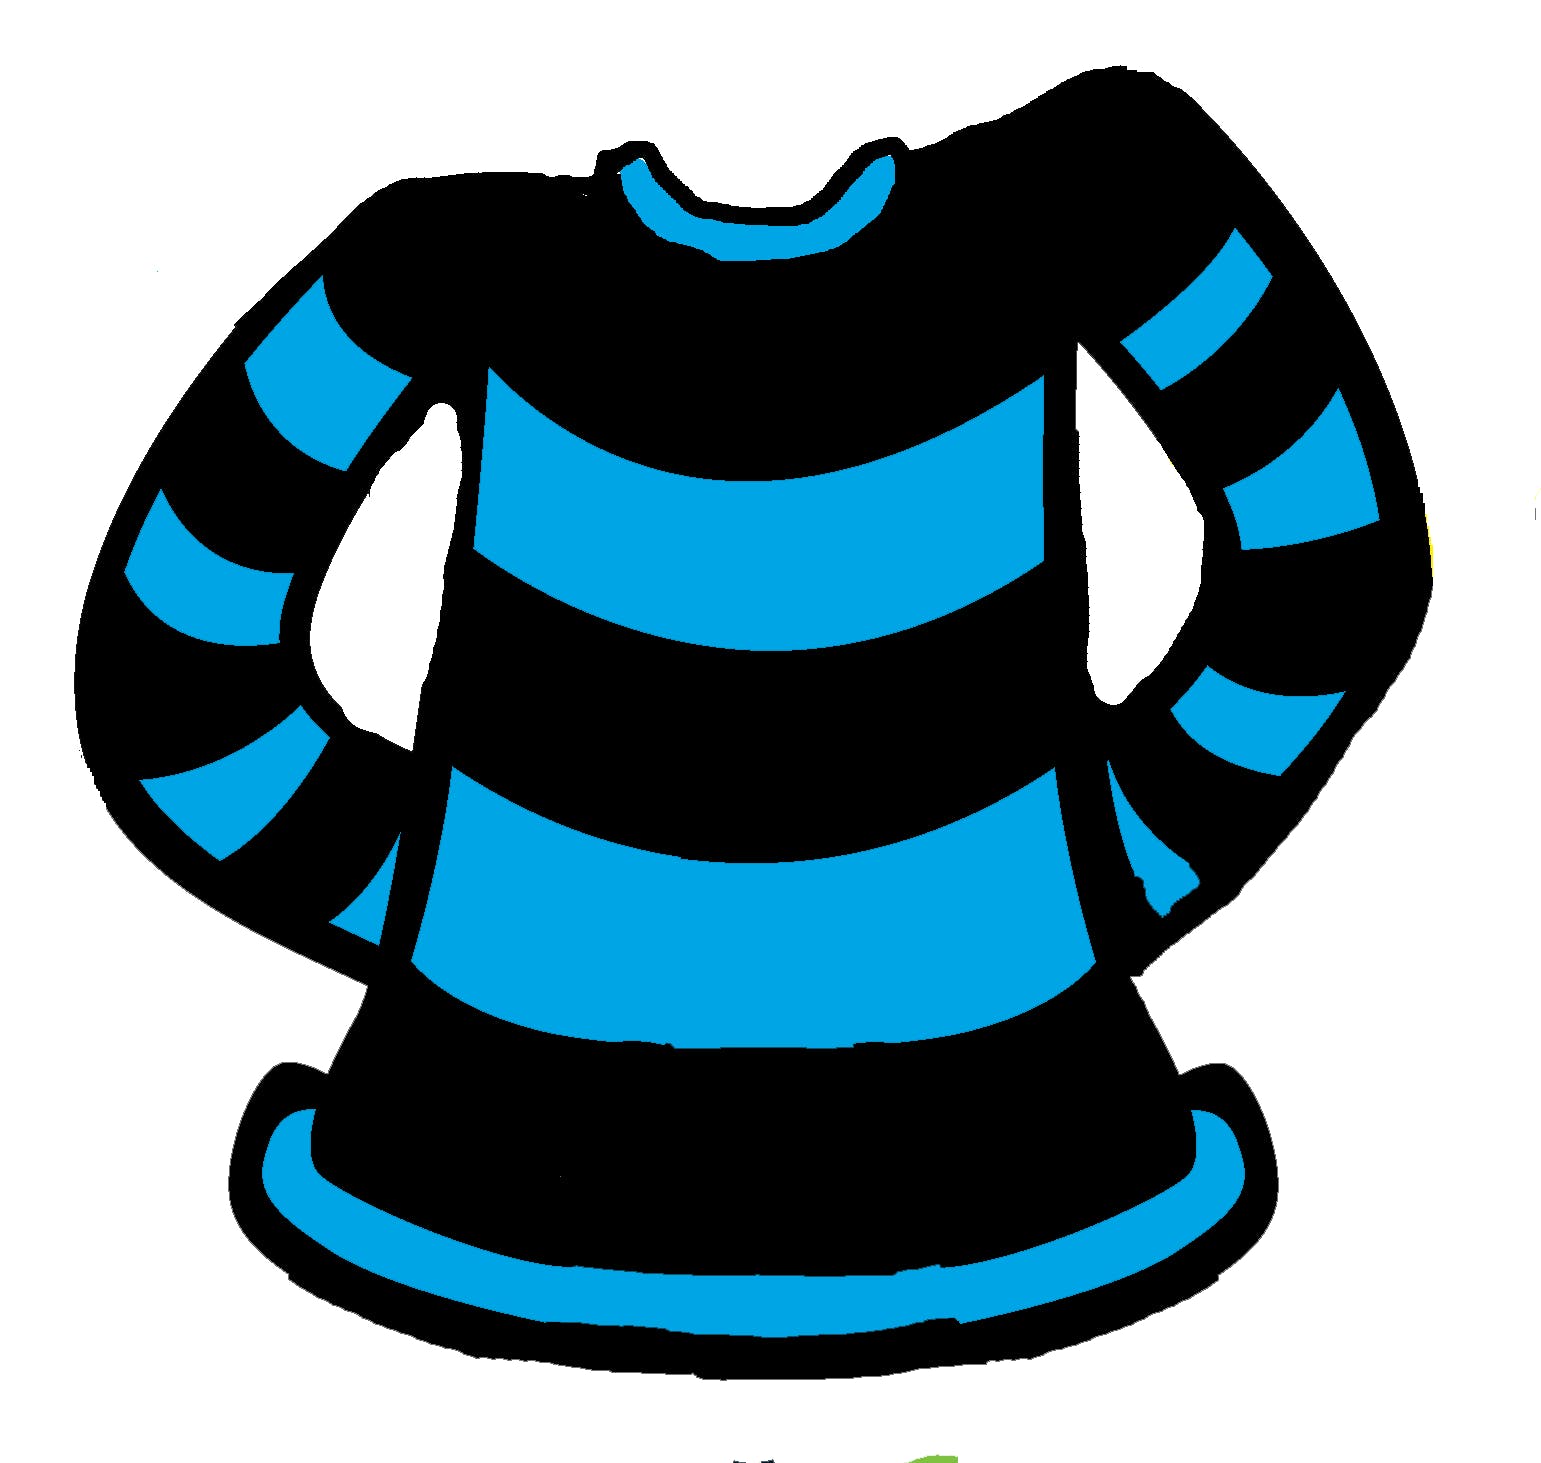 A blue and black stripe jumper